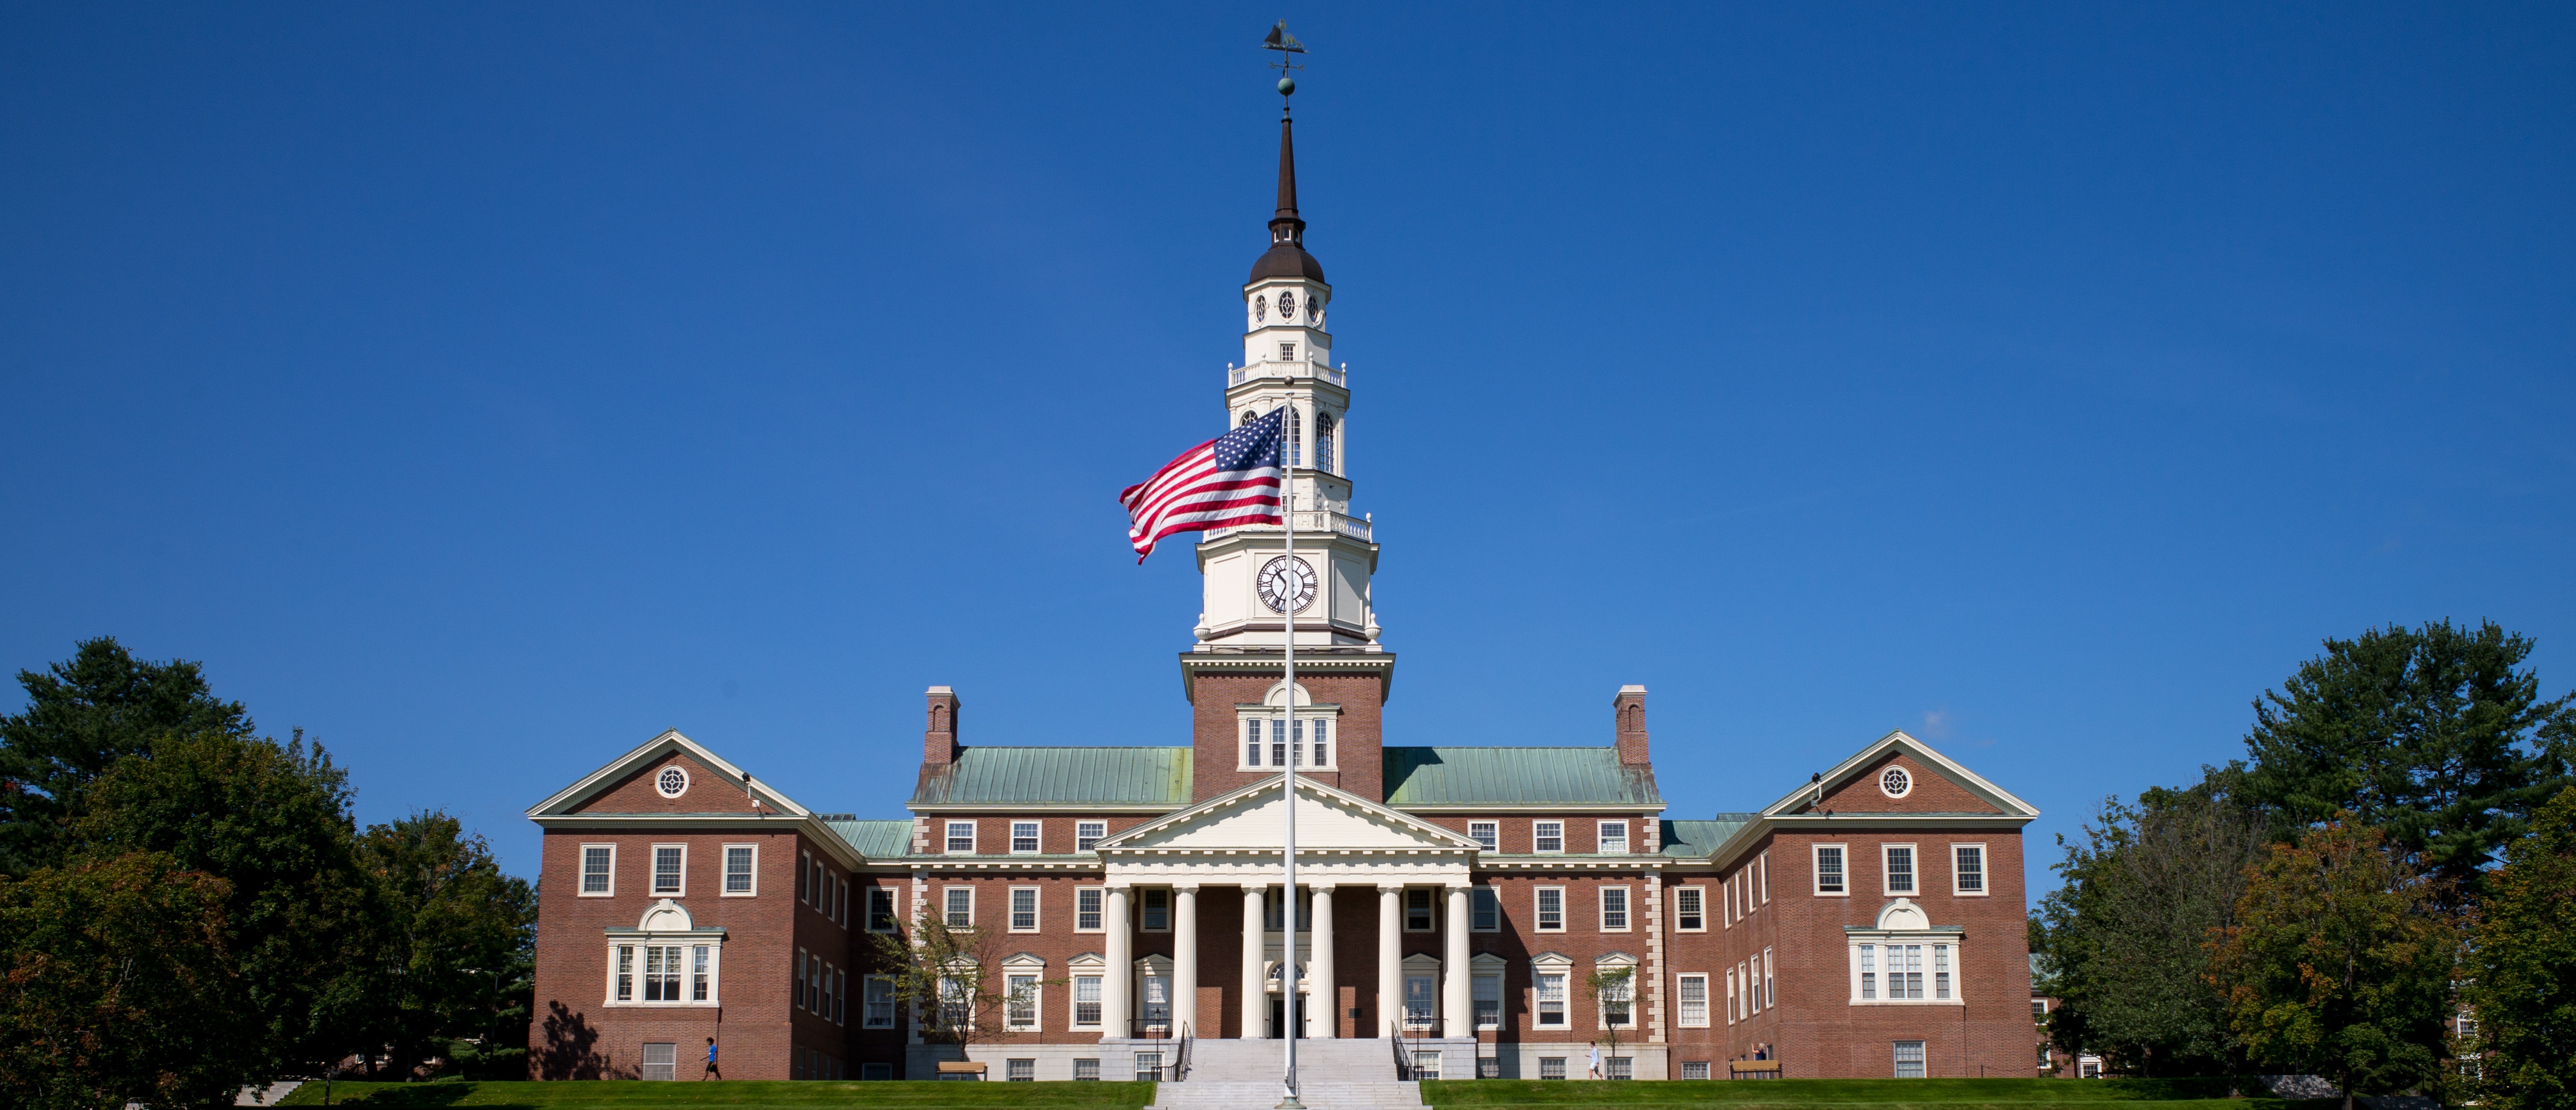 Estudar nos EUA: diferenças entre universidades públicas e privadas